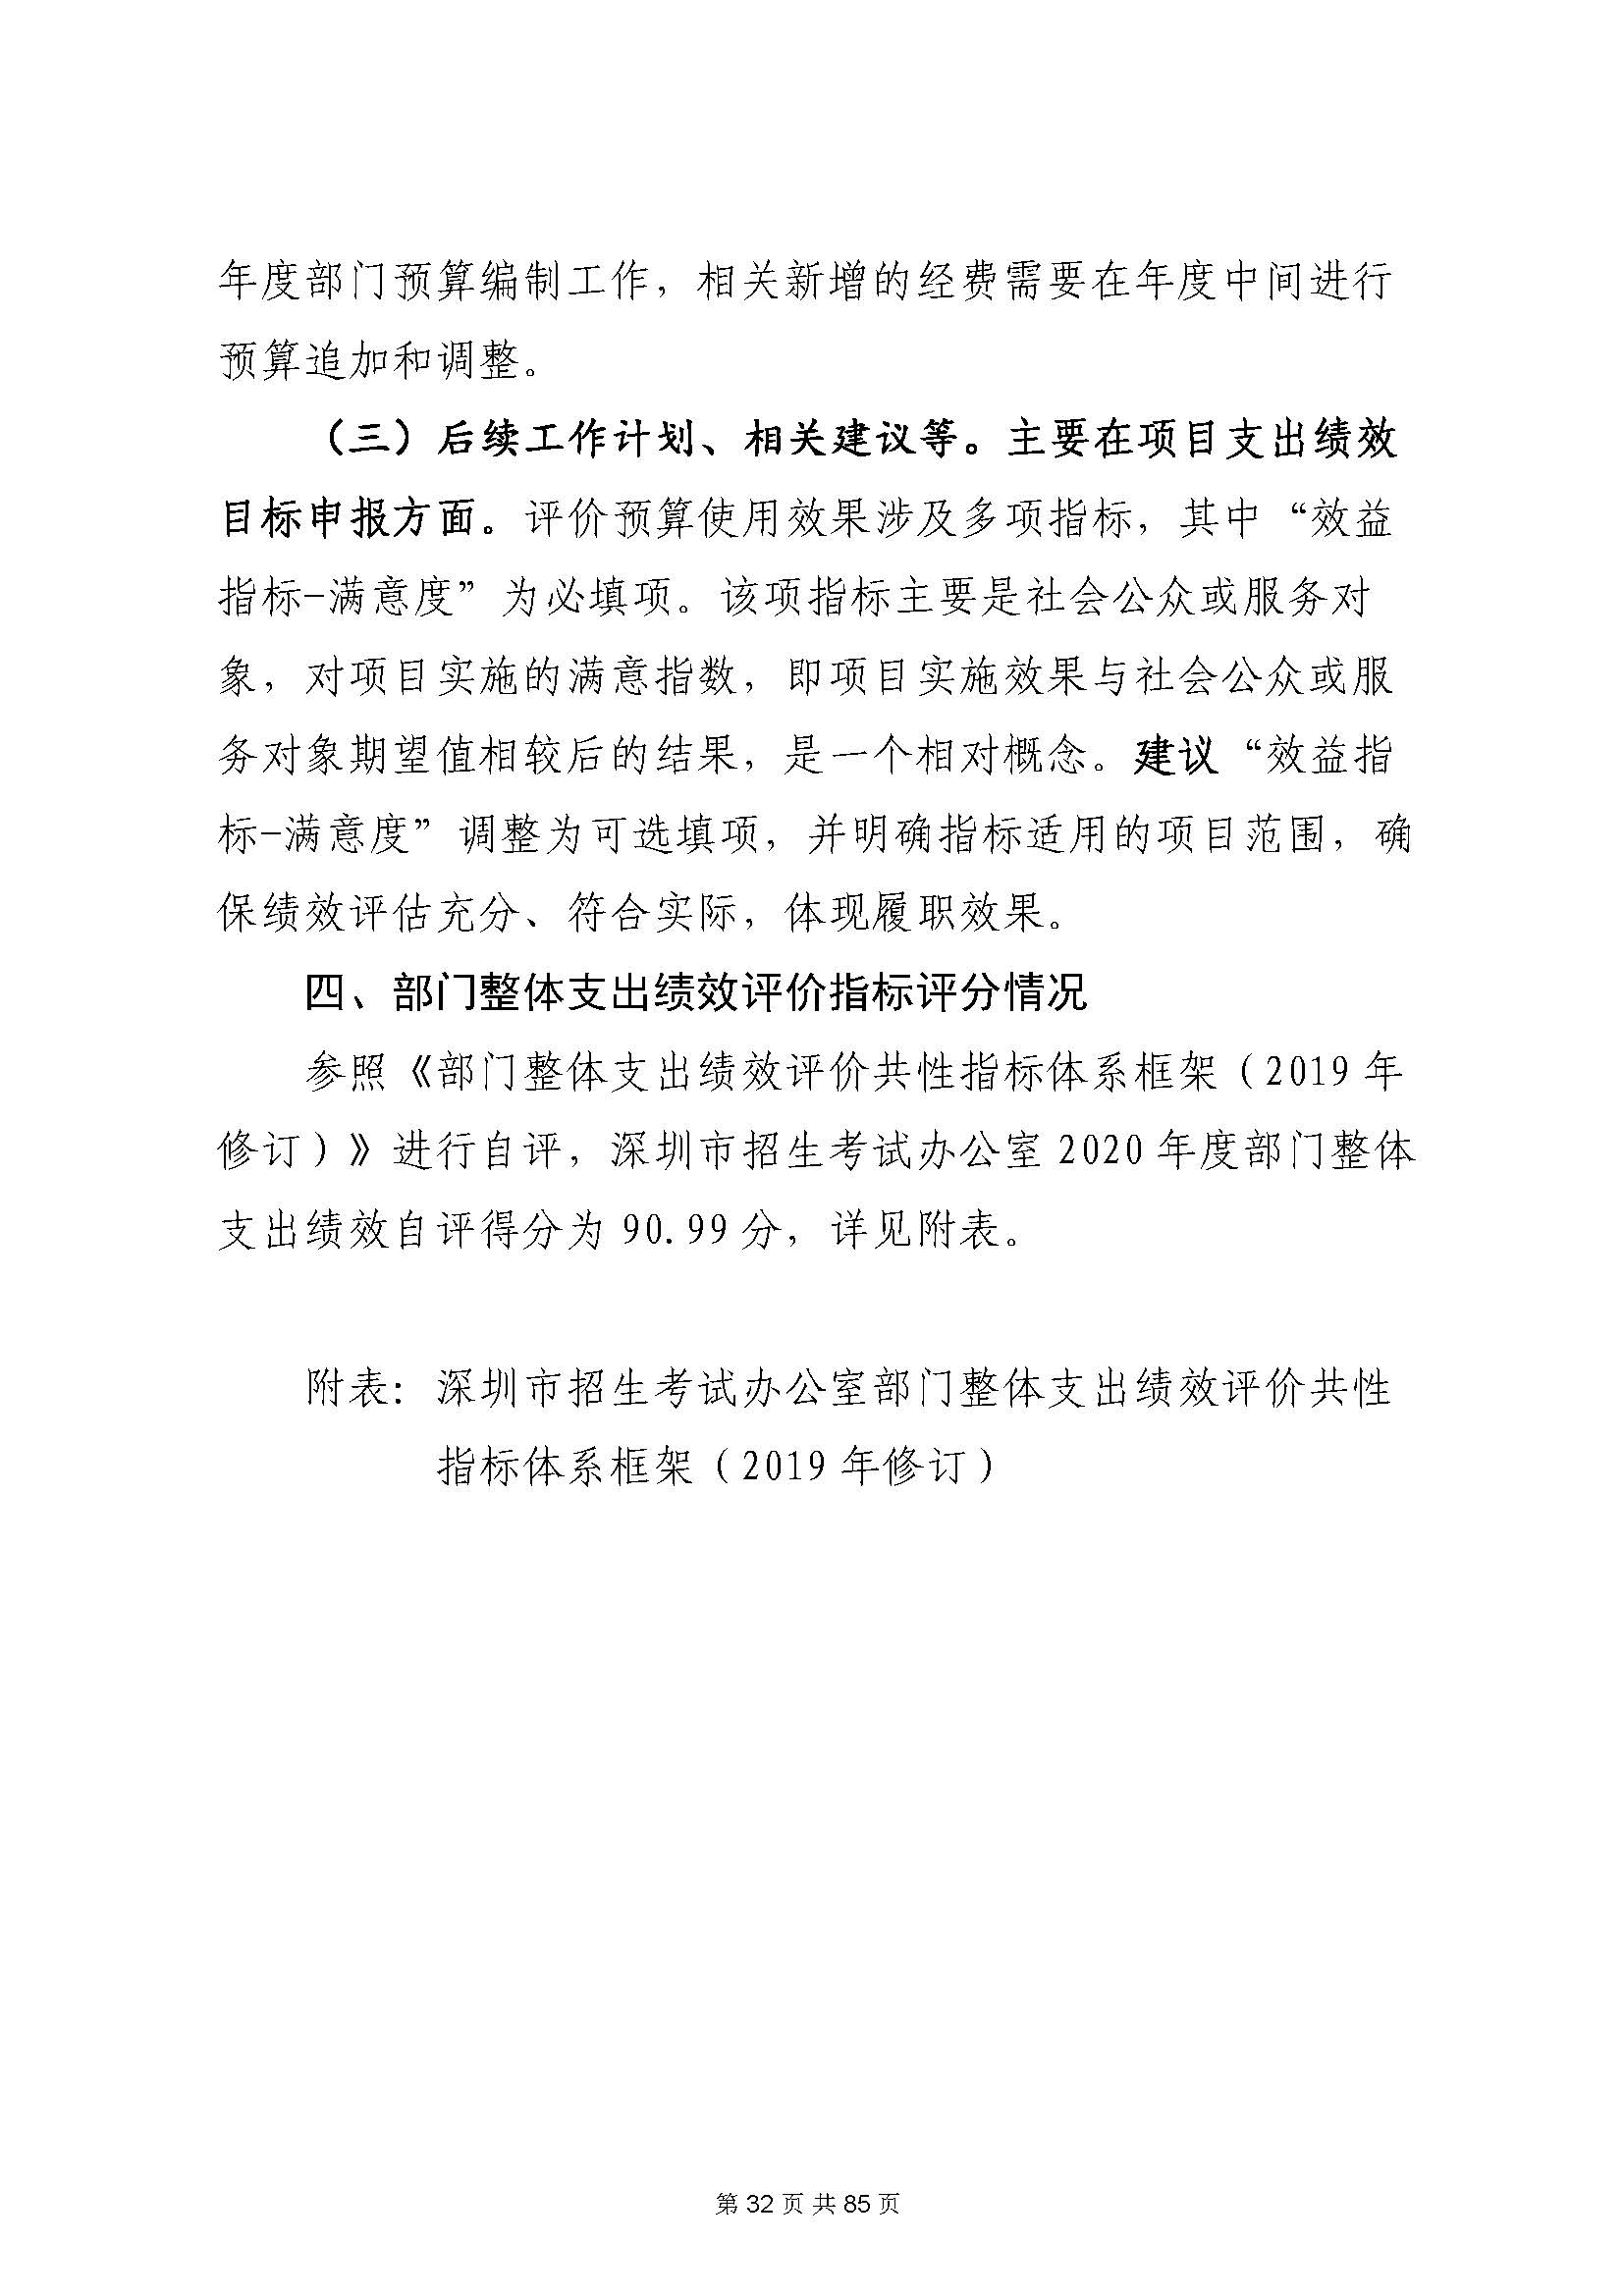 深圳市招生考试办公室2020年度部门决算_页面_33.jpg